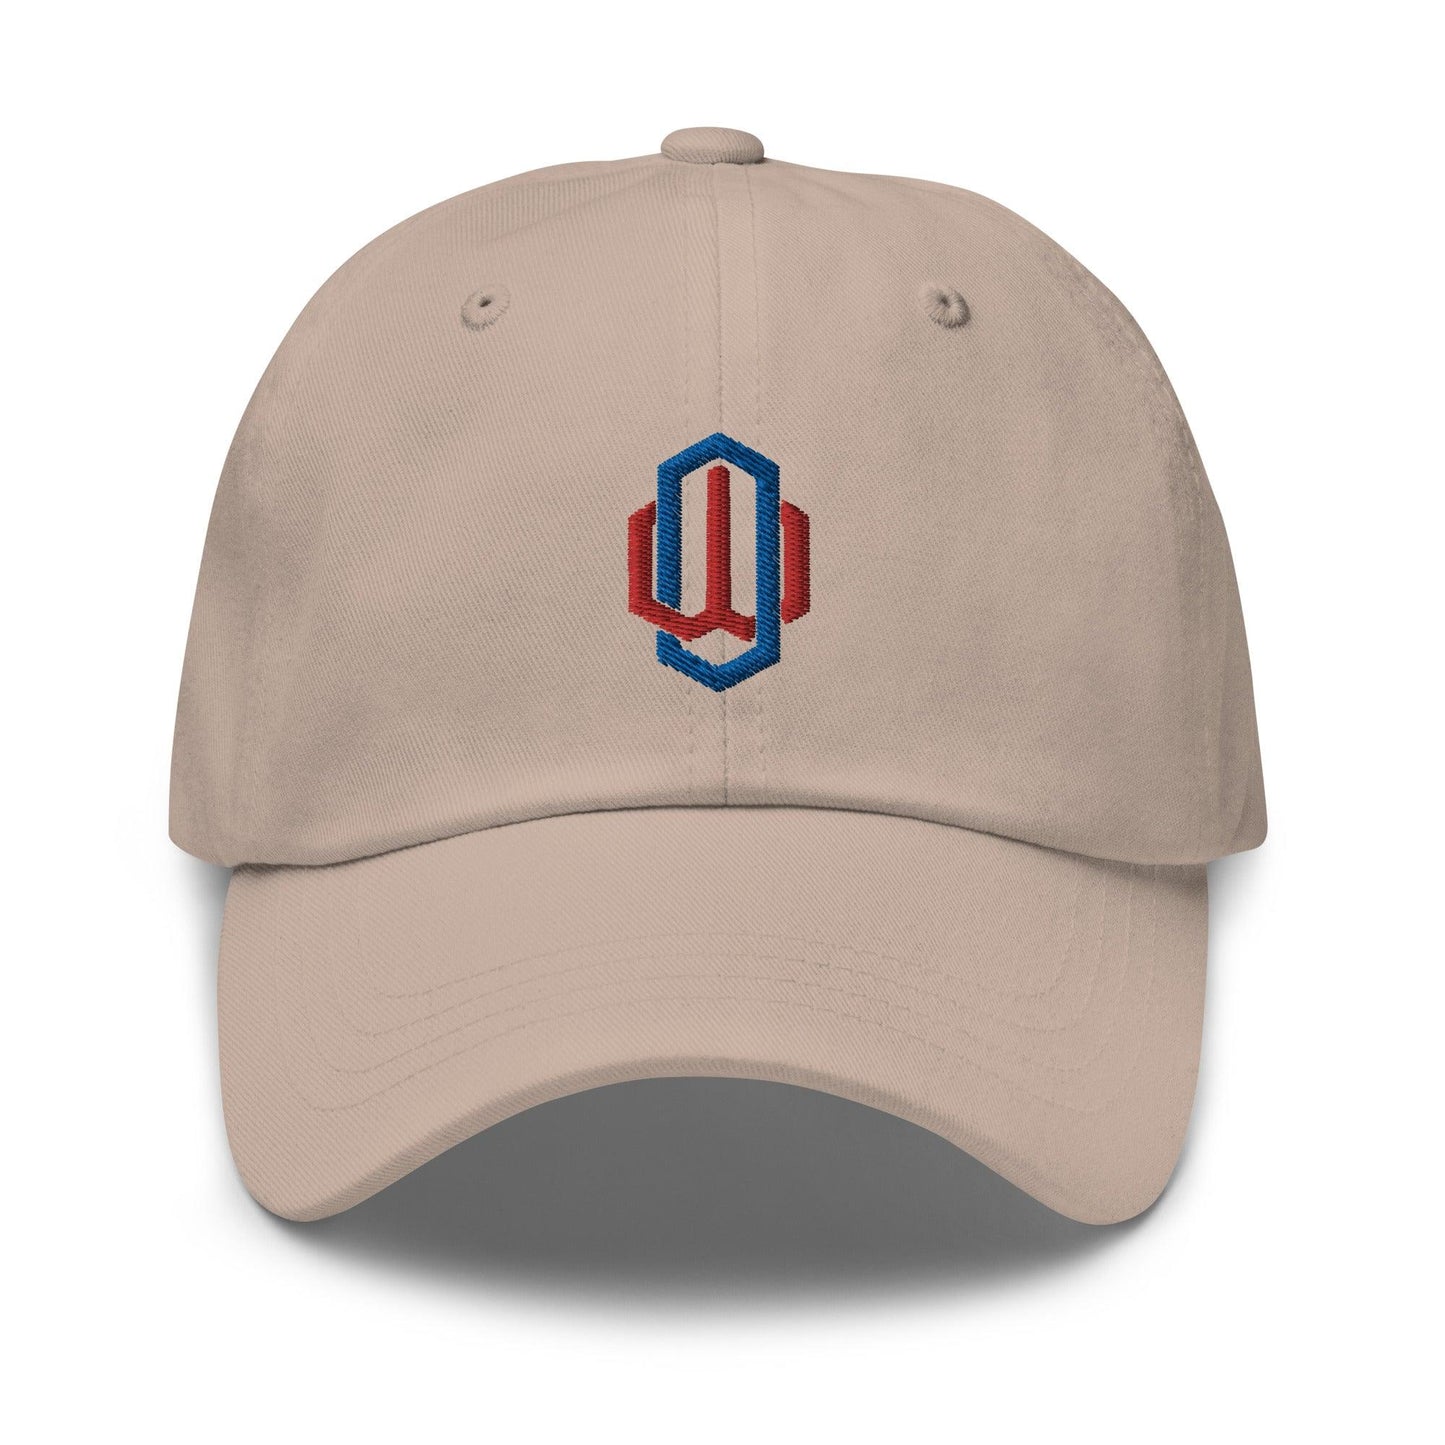 Owen White “OW” hat - Fan Arch